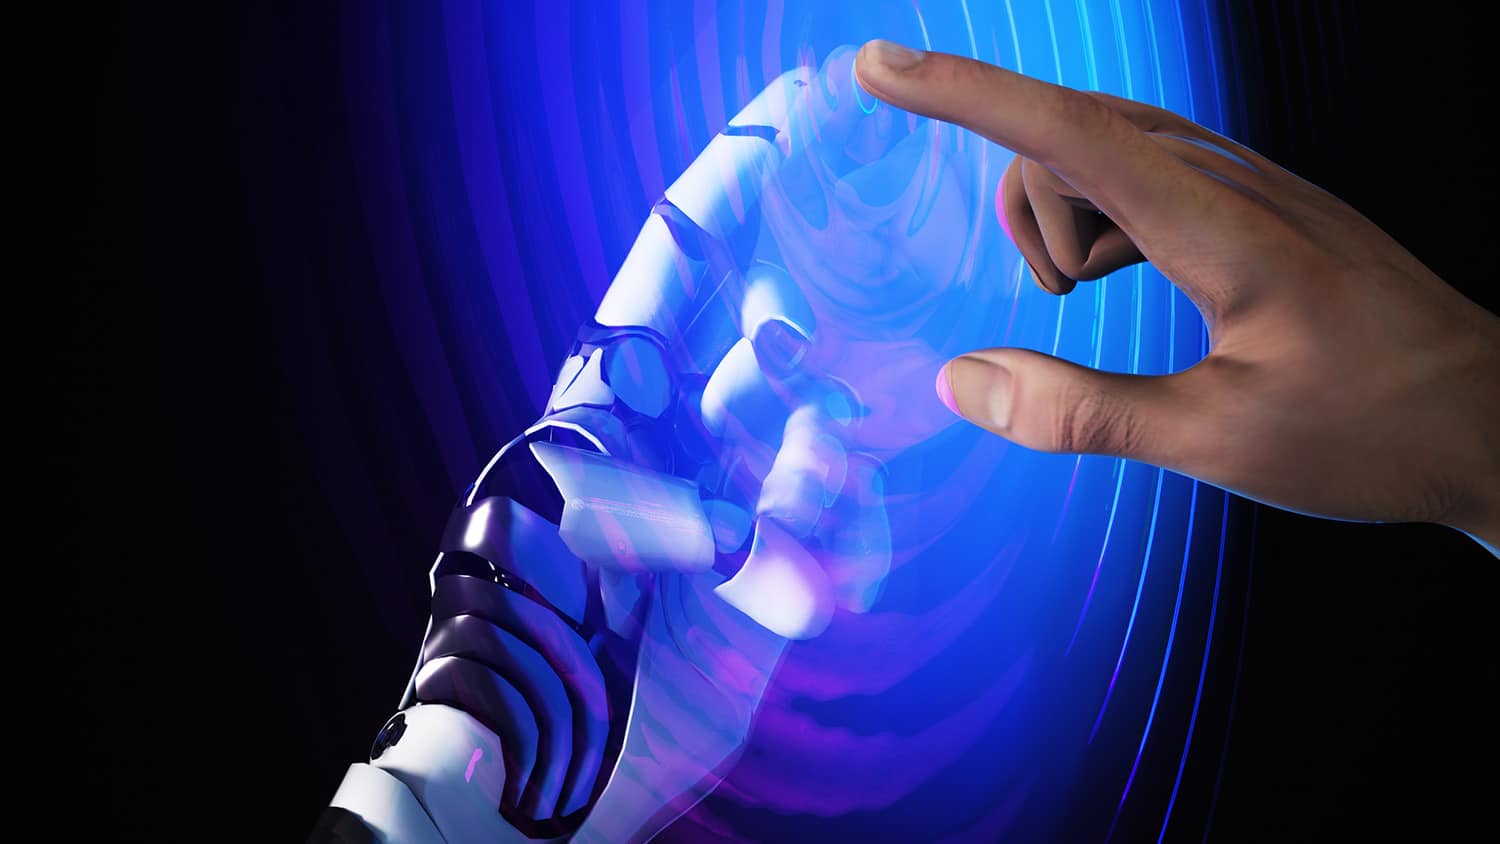 人的手和机器人的手通过液体表面接触